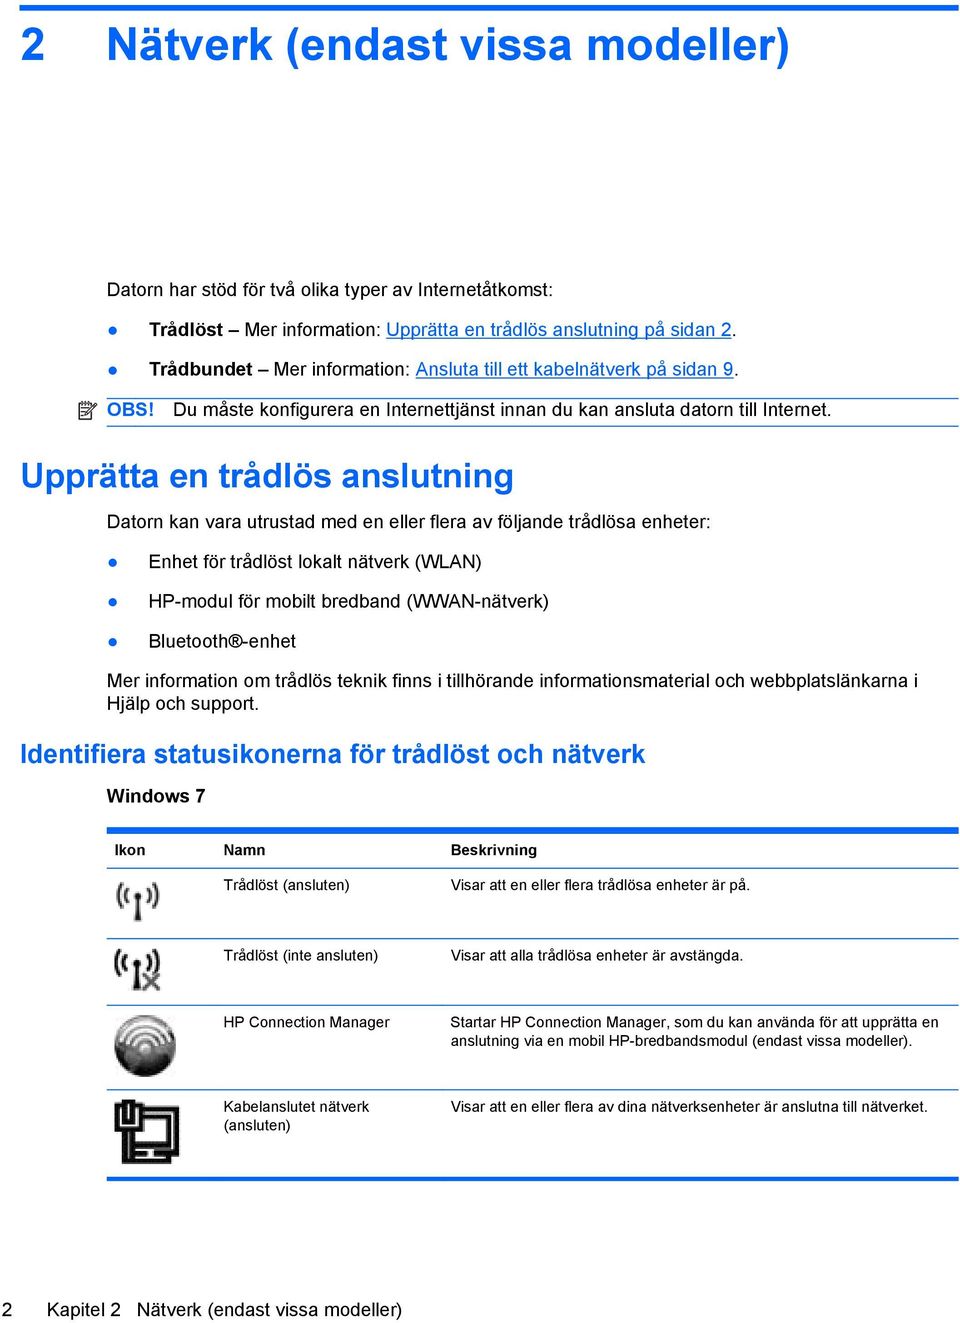 Upprätta en trådlös anslutning Datorn kan vara utrustad med en eller flera av följande trådlösa enheter: Enhet för trådlöst lokalt nätverk (WLAN) HP-modul för mobilt bredband (WWAN-nätverk) Bluetooth